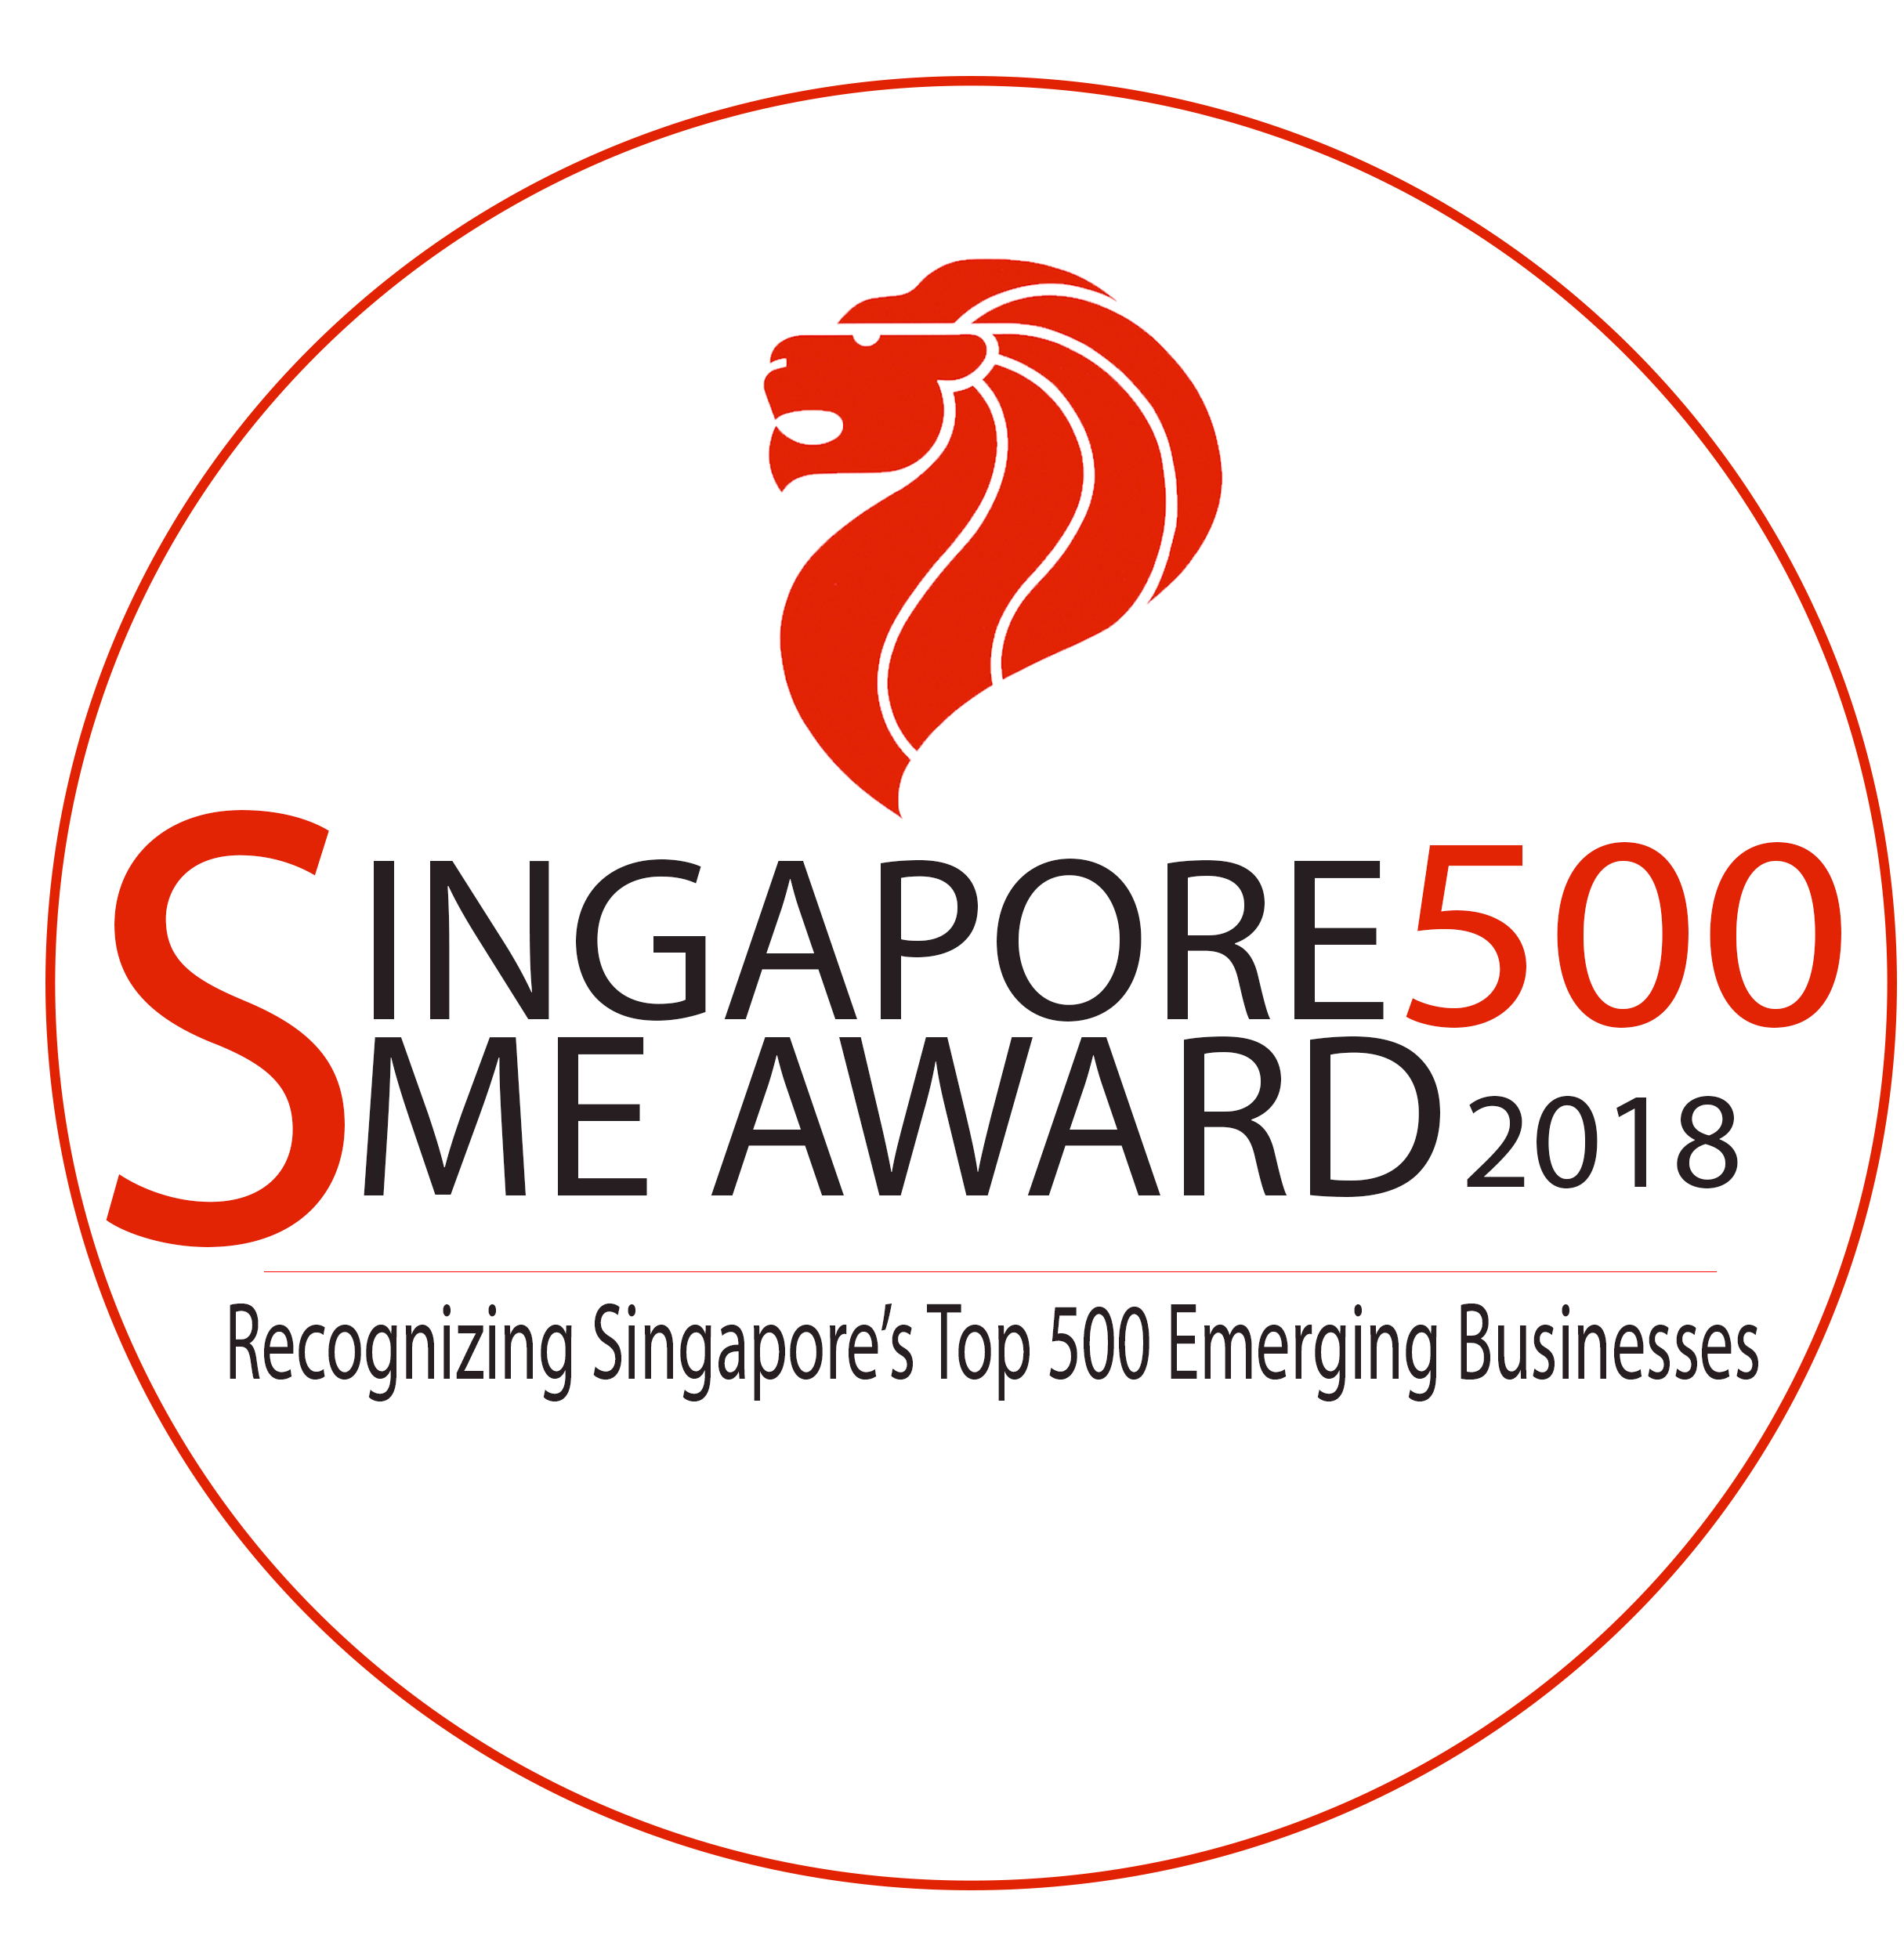 Singapore SME 500 Award 2018